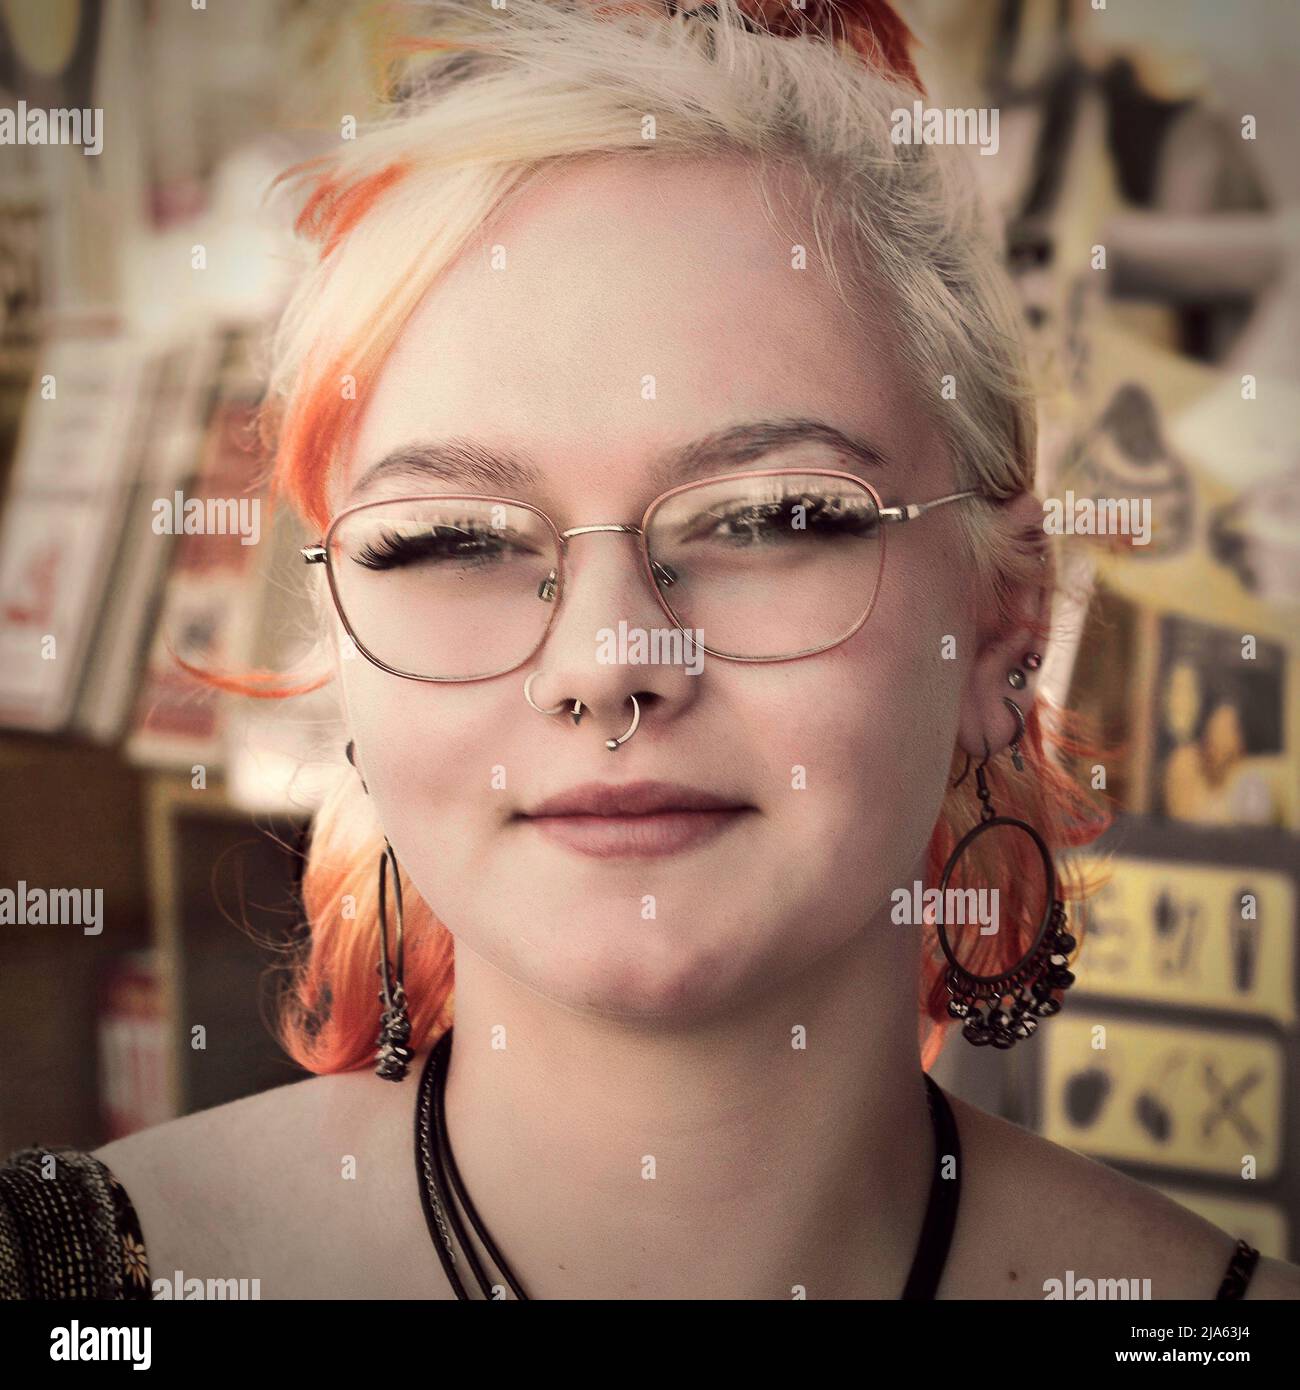 Straßenportrait der jungen Frau mit Nasenring, blonden Haaren und Brille Stockfoto